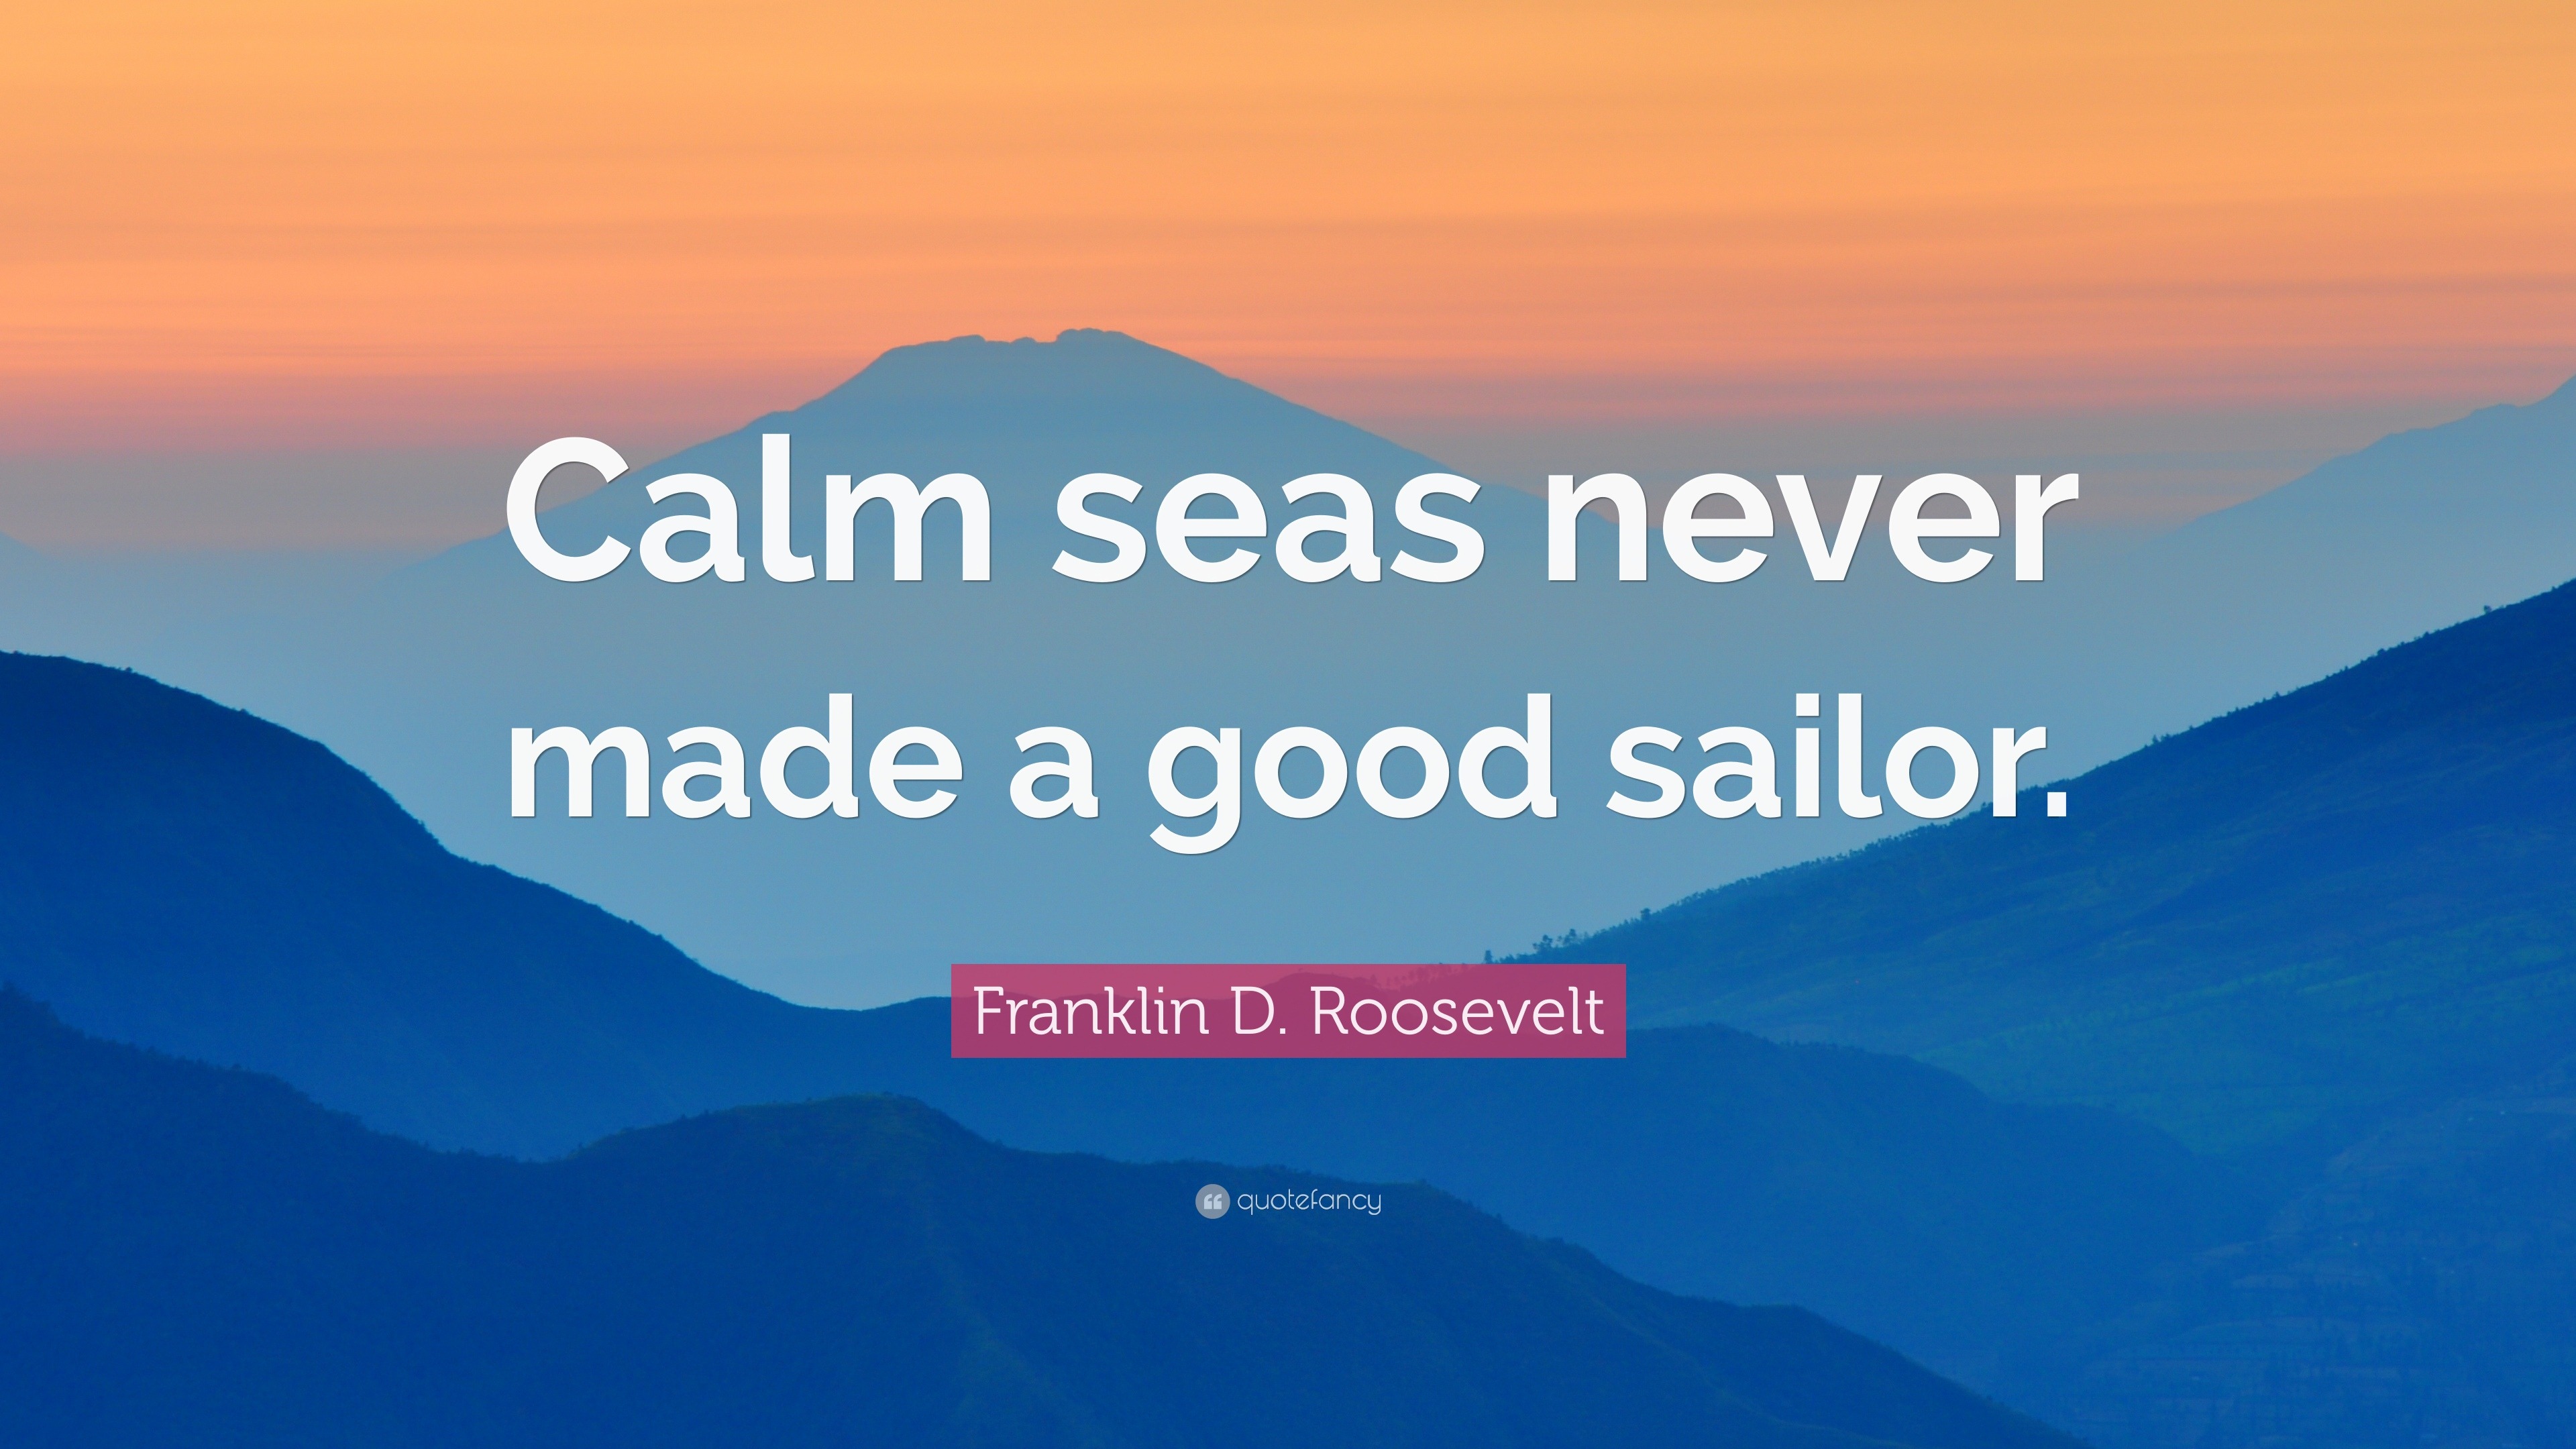 Franklin D. Roosevelt Quote “Calm seas never made a good